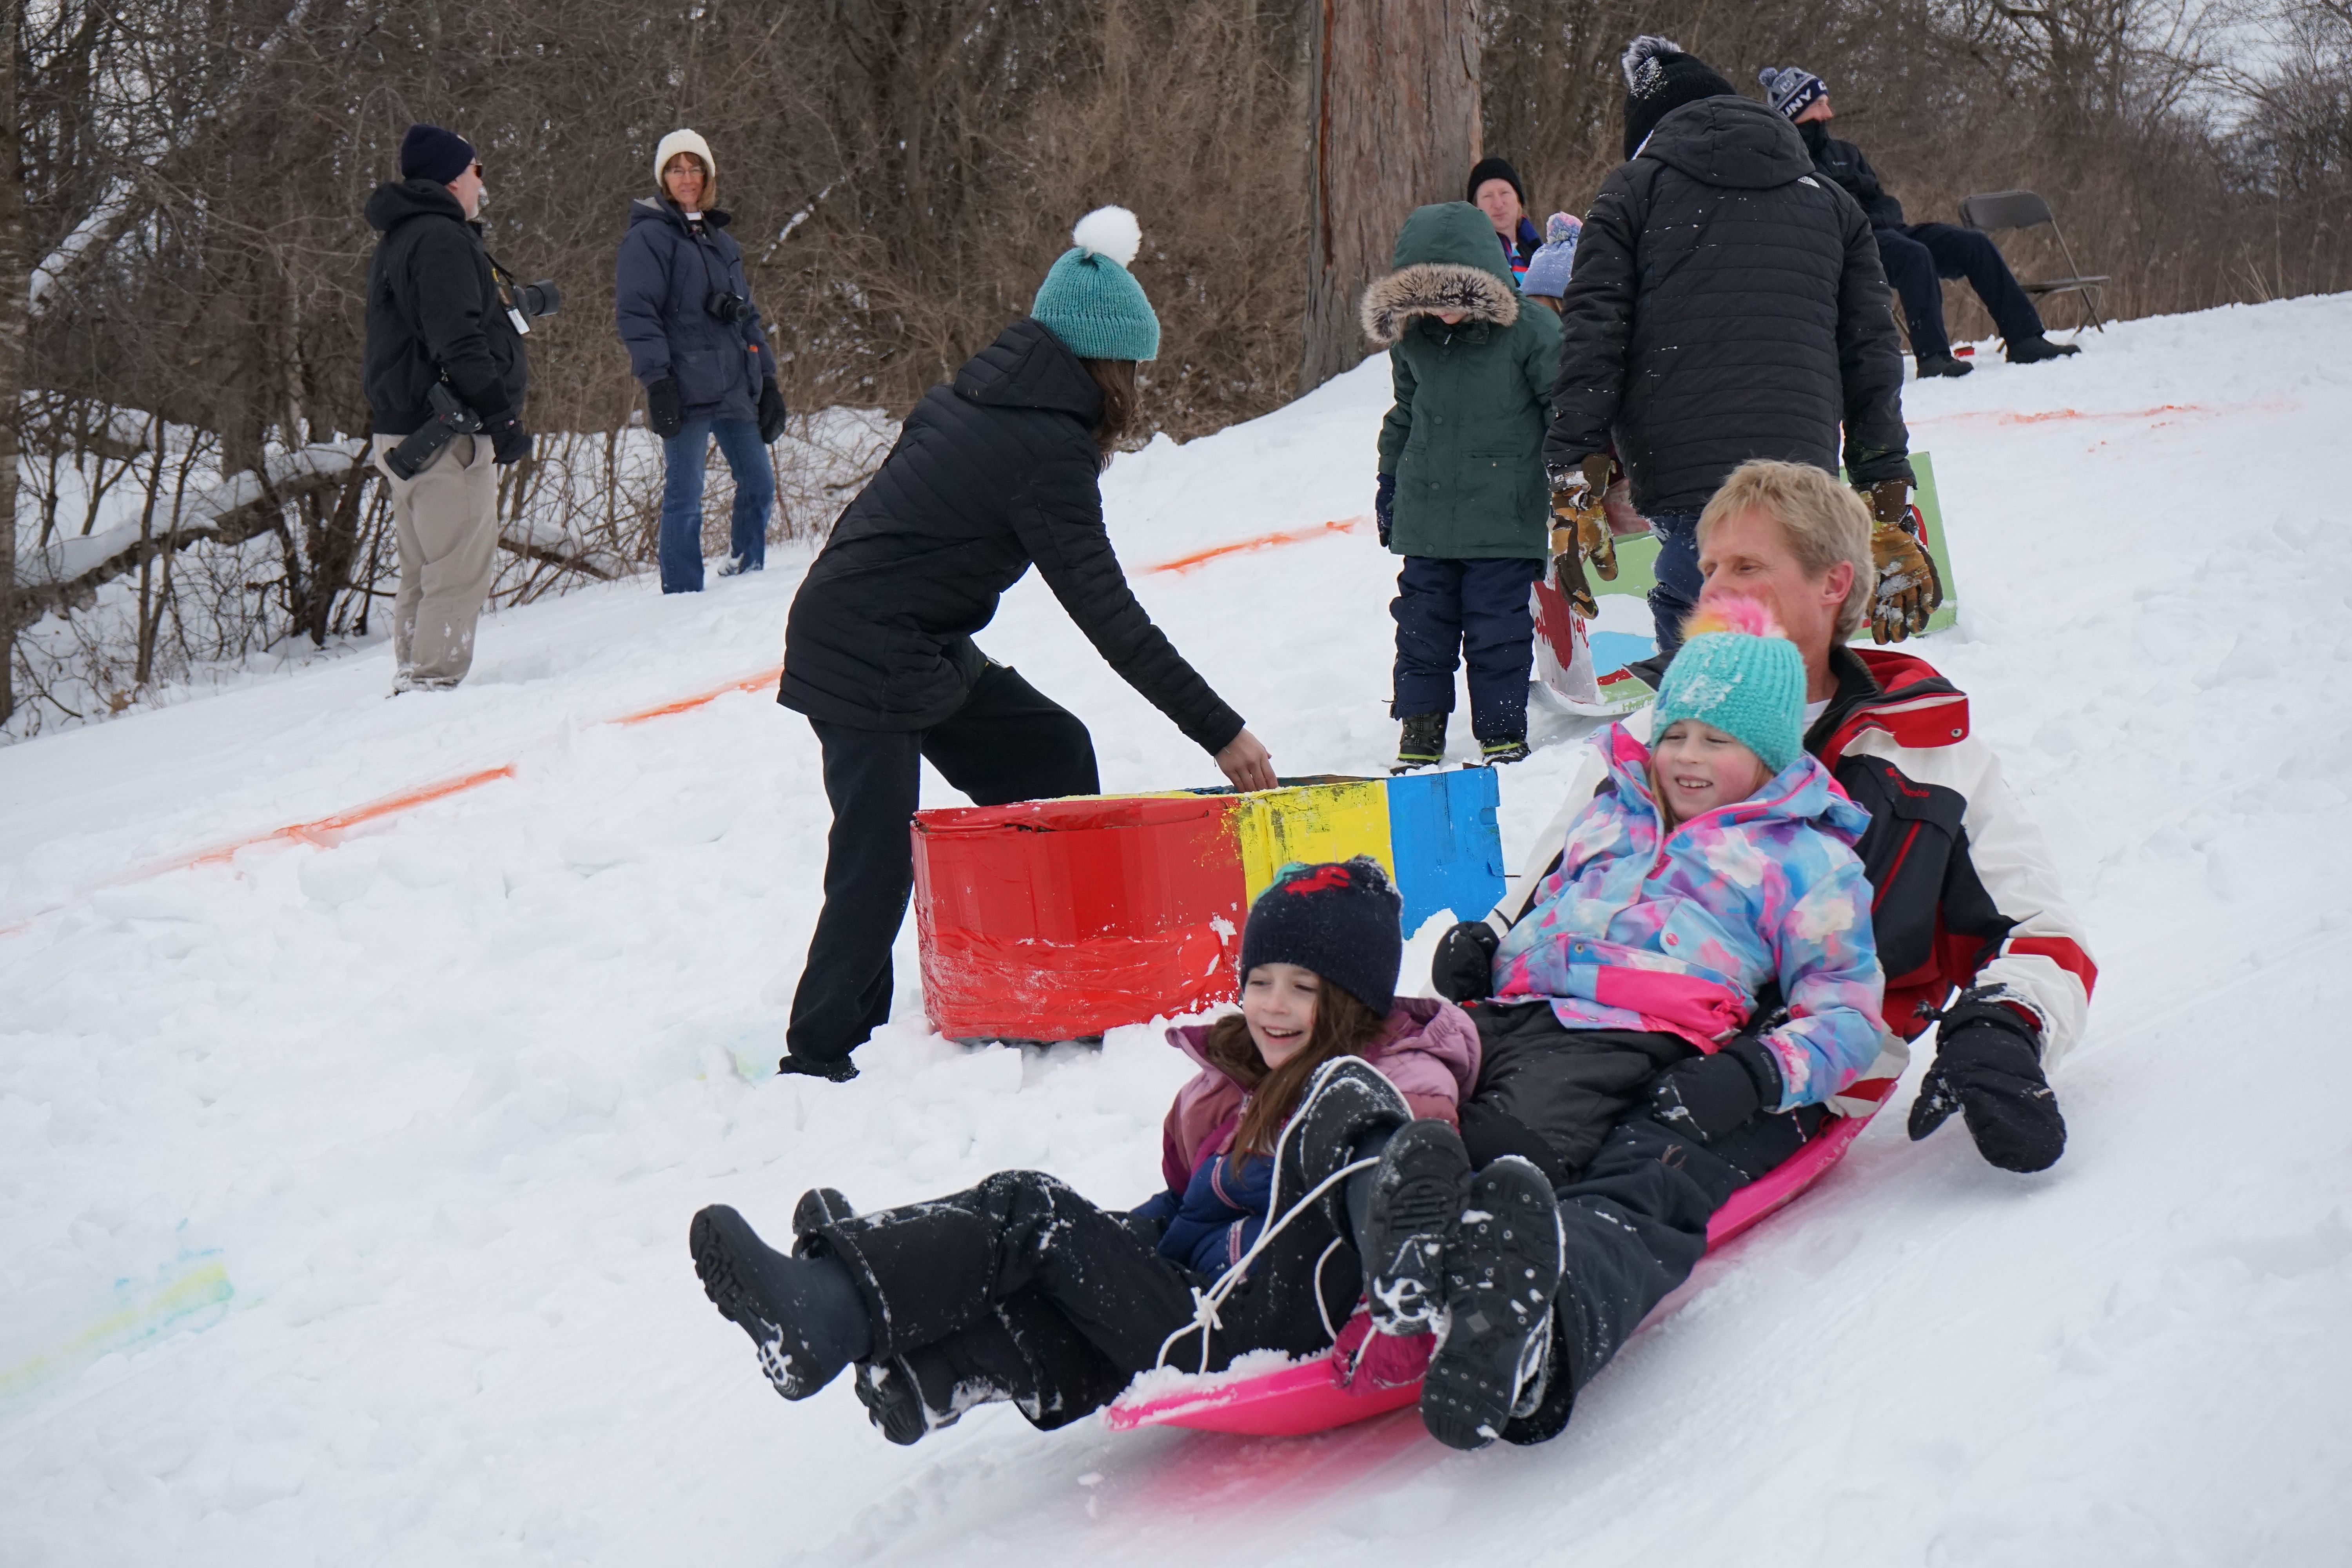 Children sledding in the snow